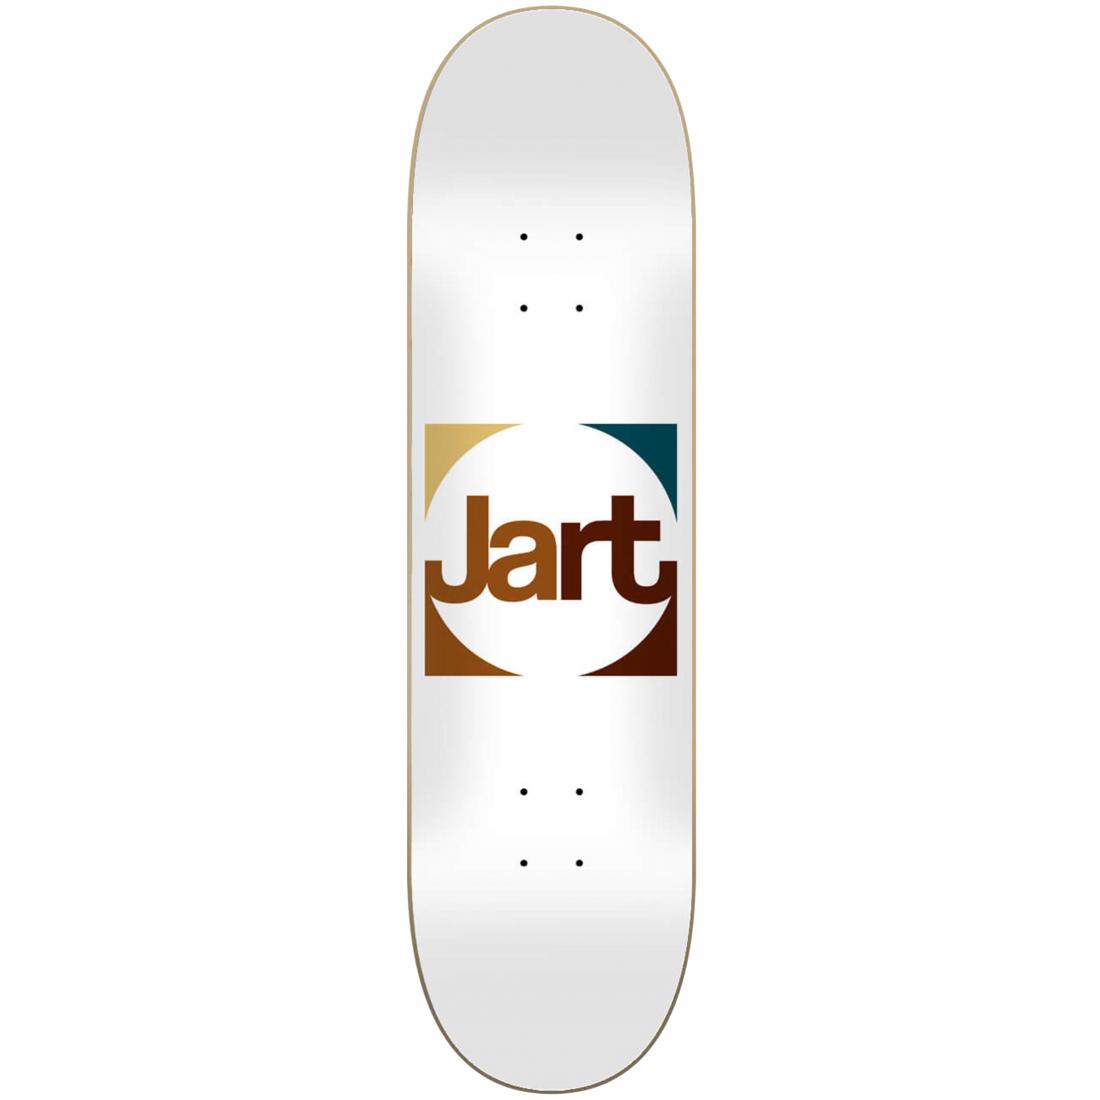 Дека скейтборд Jart Frame Lc Deck Jart, цвет белый, размер 8.0